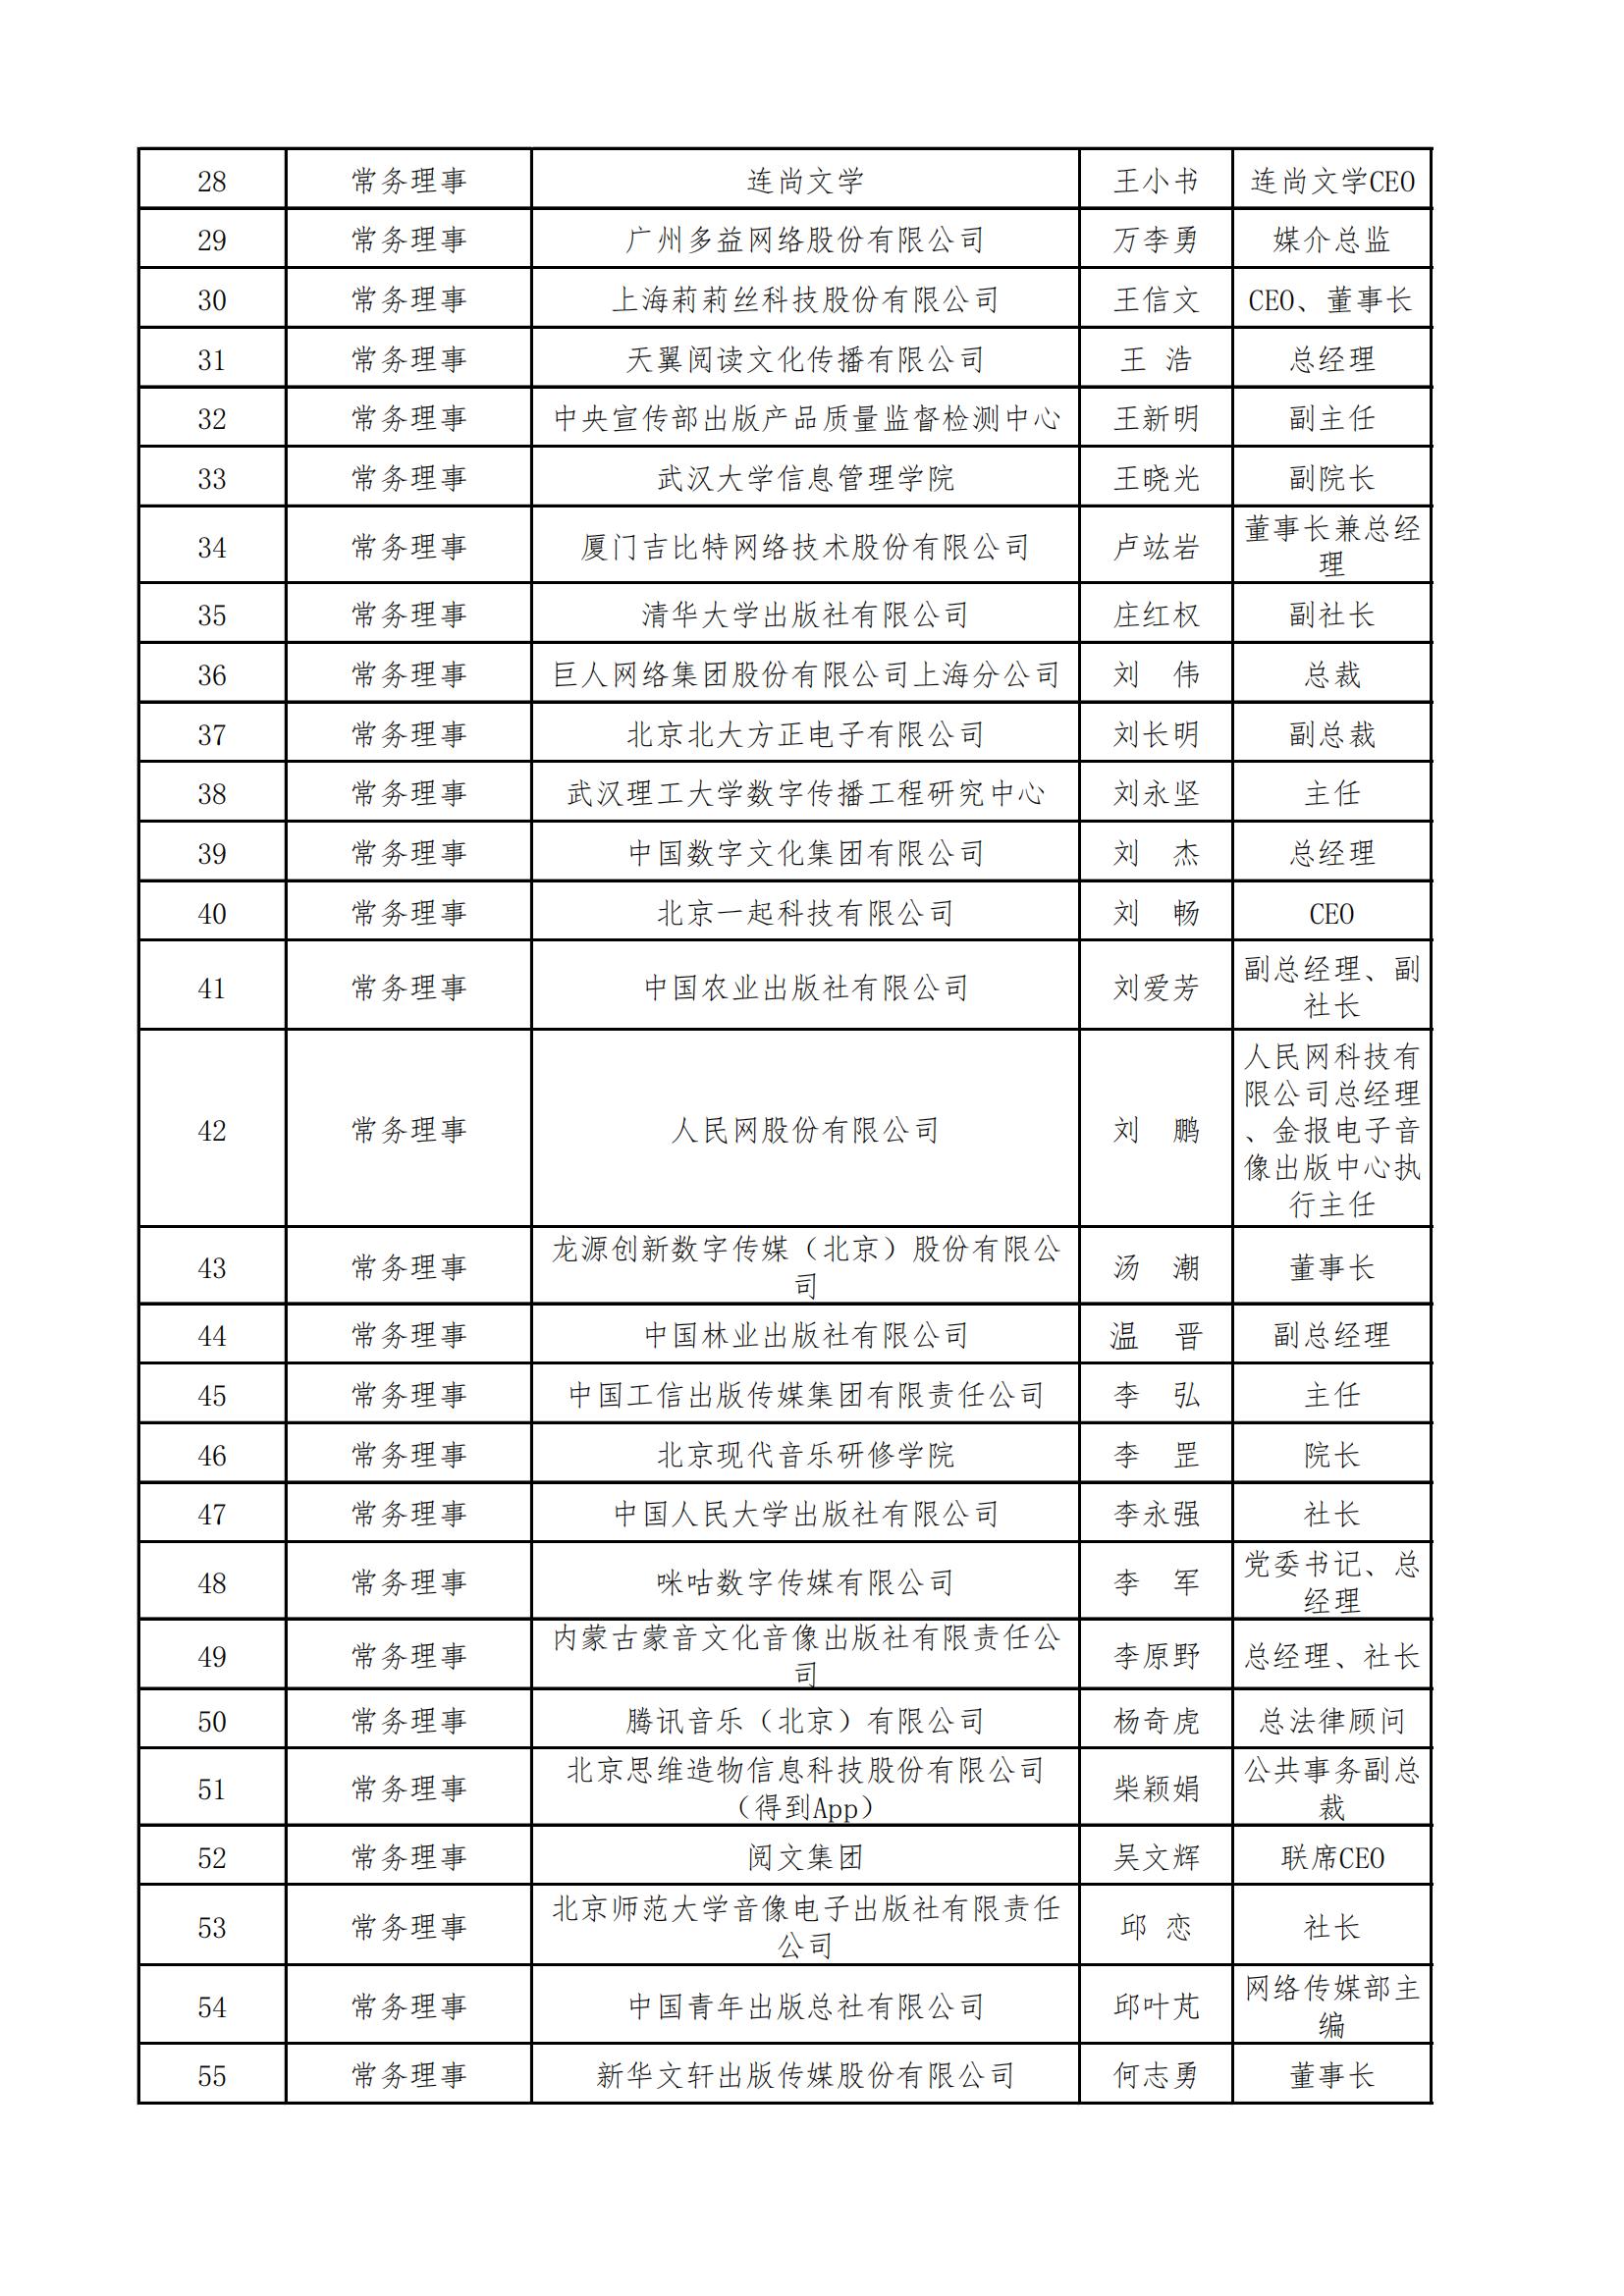 中國音像與數字出版協會第五屆理事會名錄_01.jpg